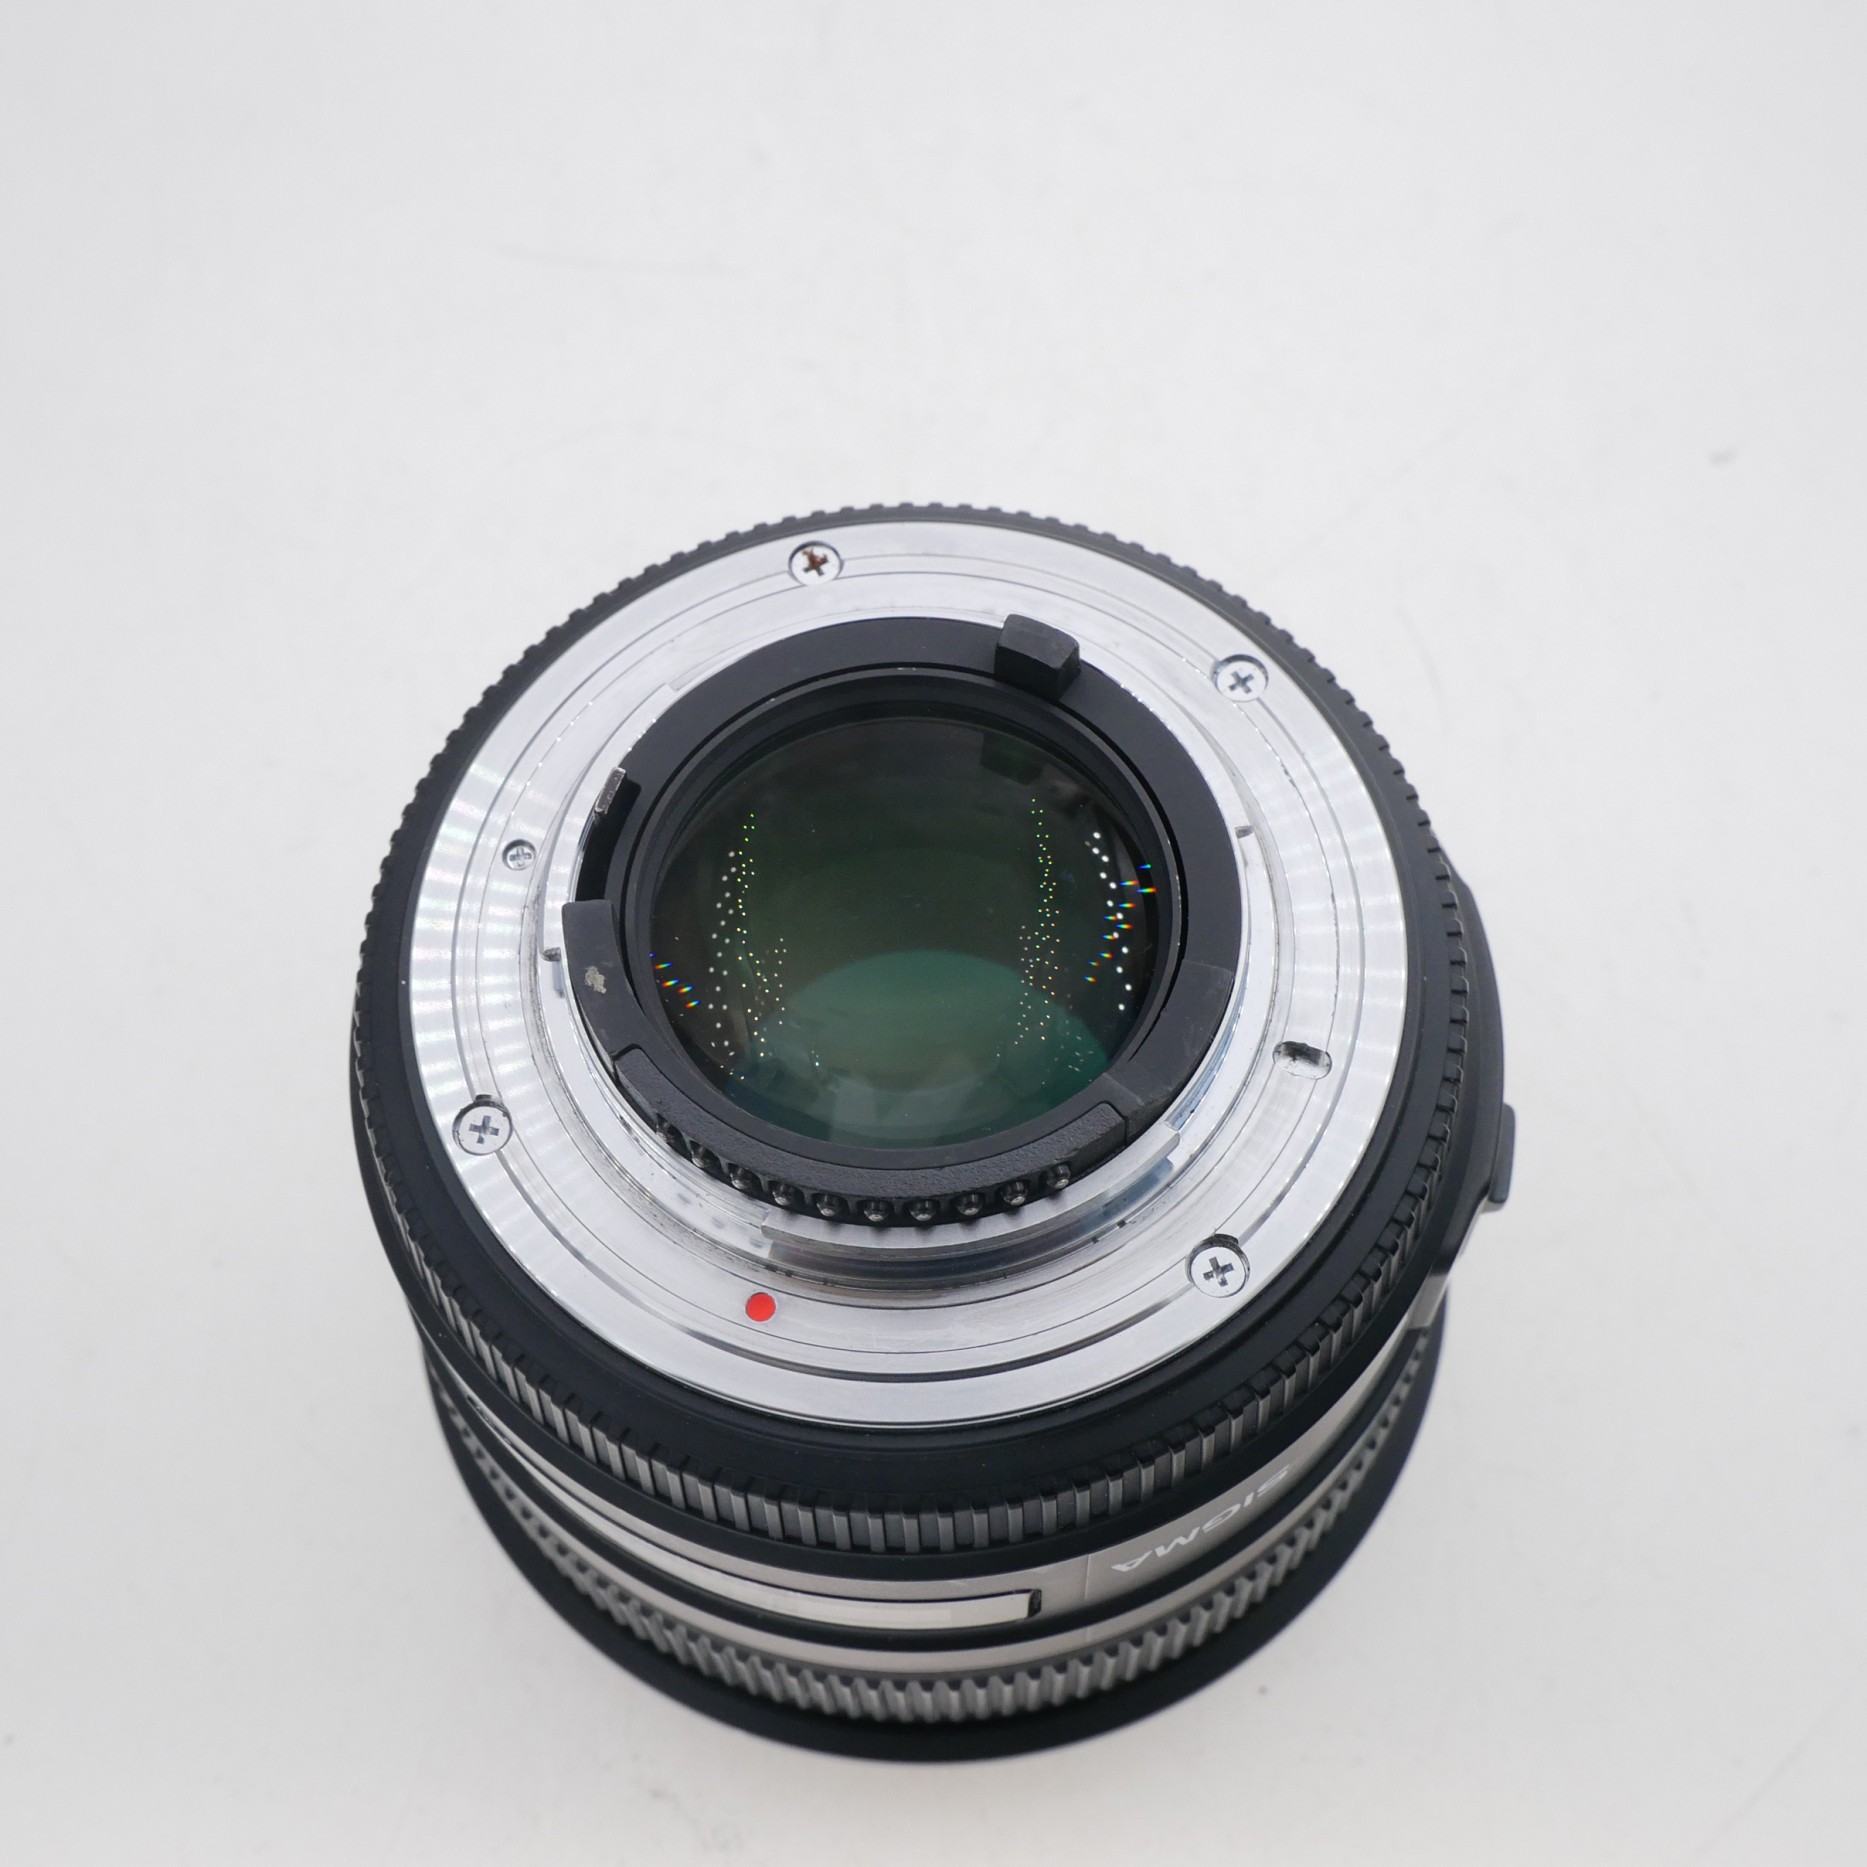 S-H-7TH659_3.jpg - Sigma AF 50mm F1.4 DG HSM Lens in Nikon FX Mount 